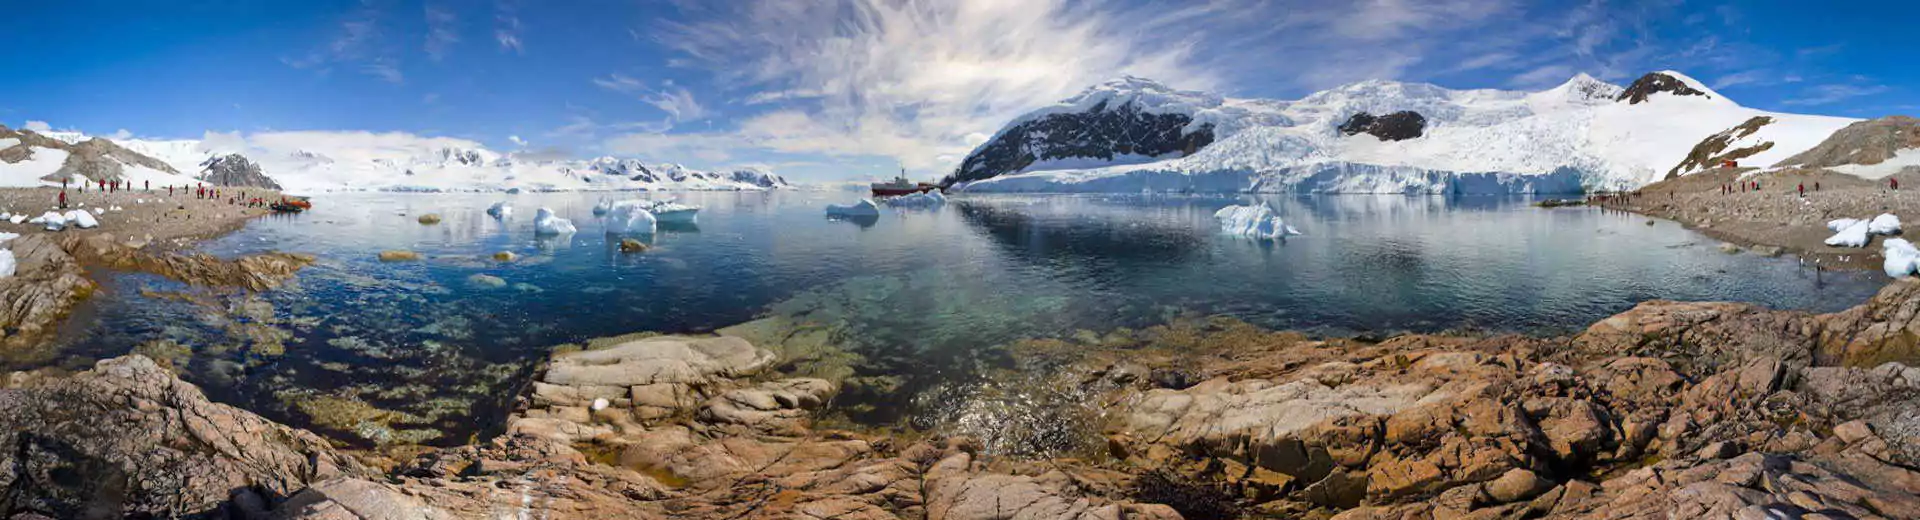 Naturreisen Chile Reisen Patagonien panorama See Schnee